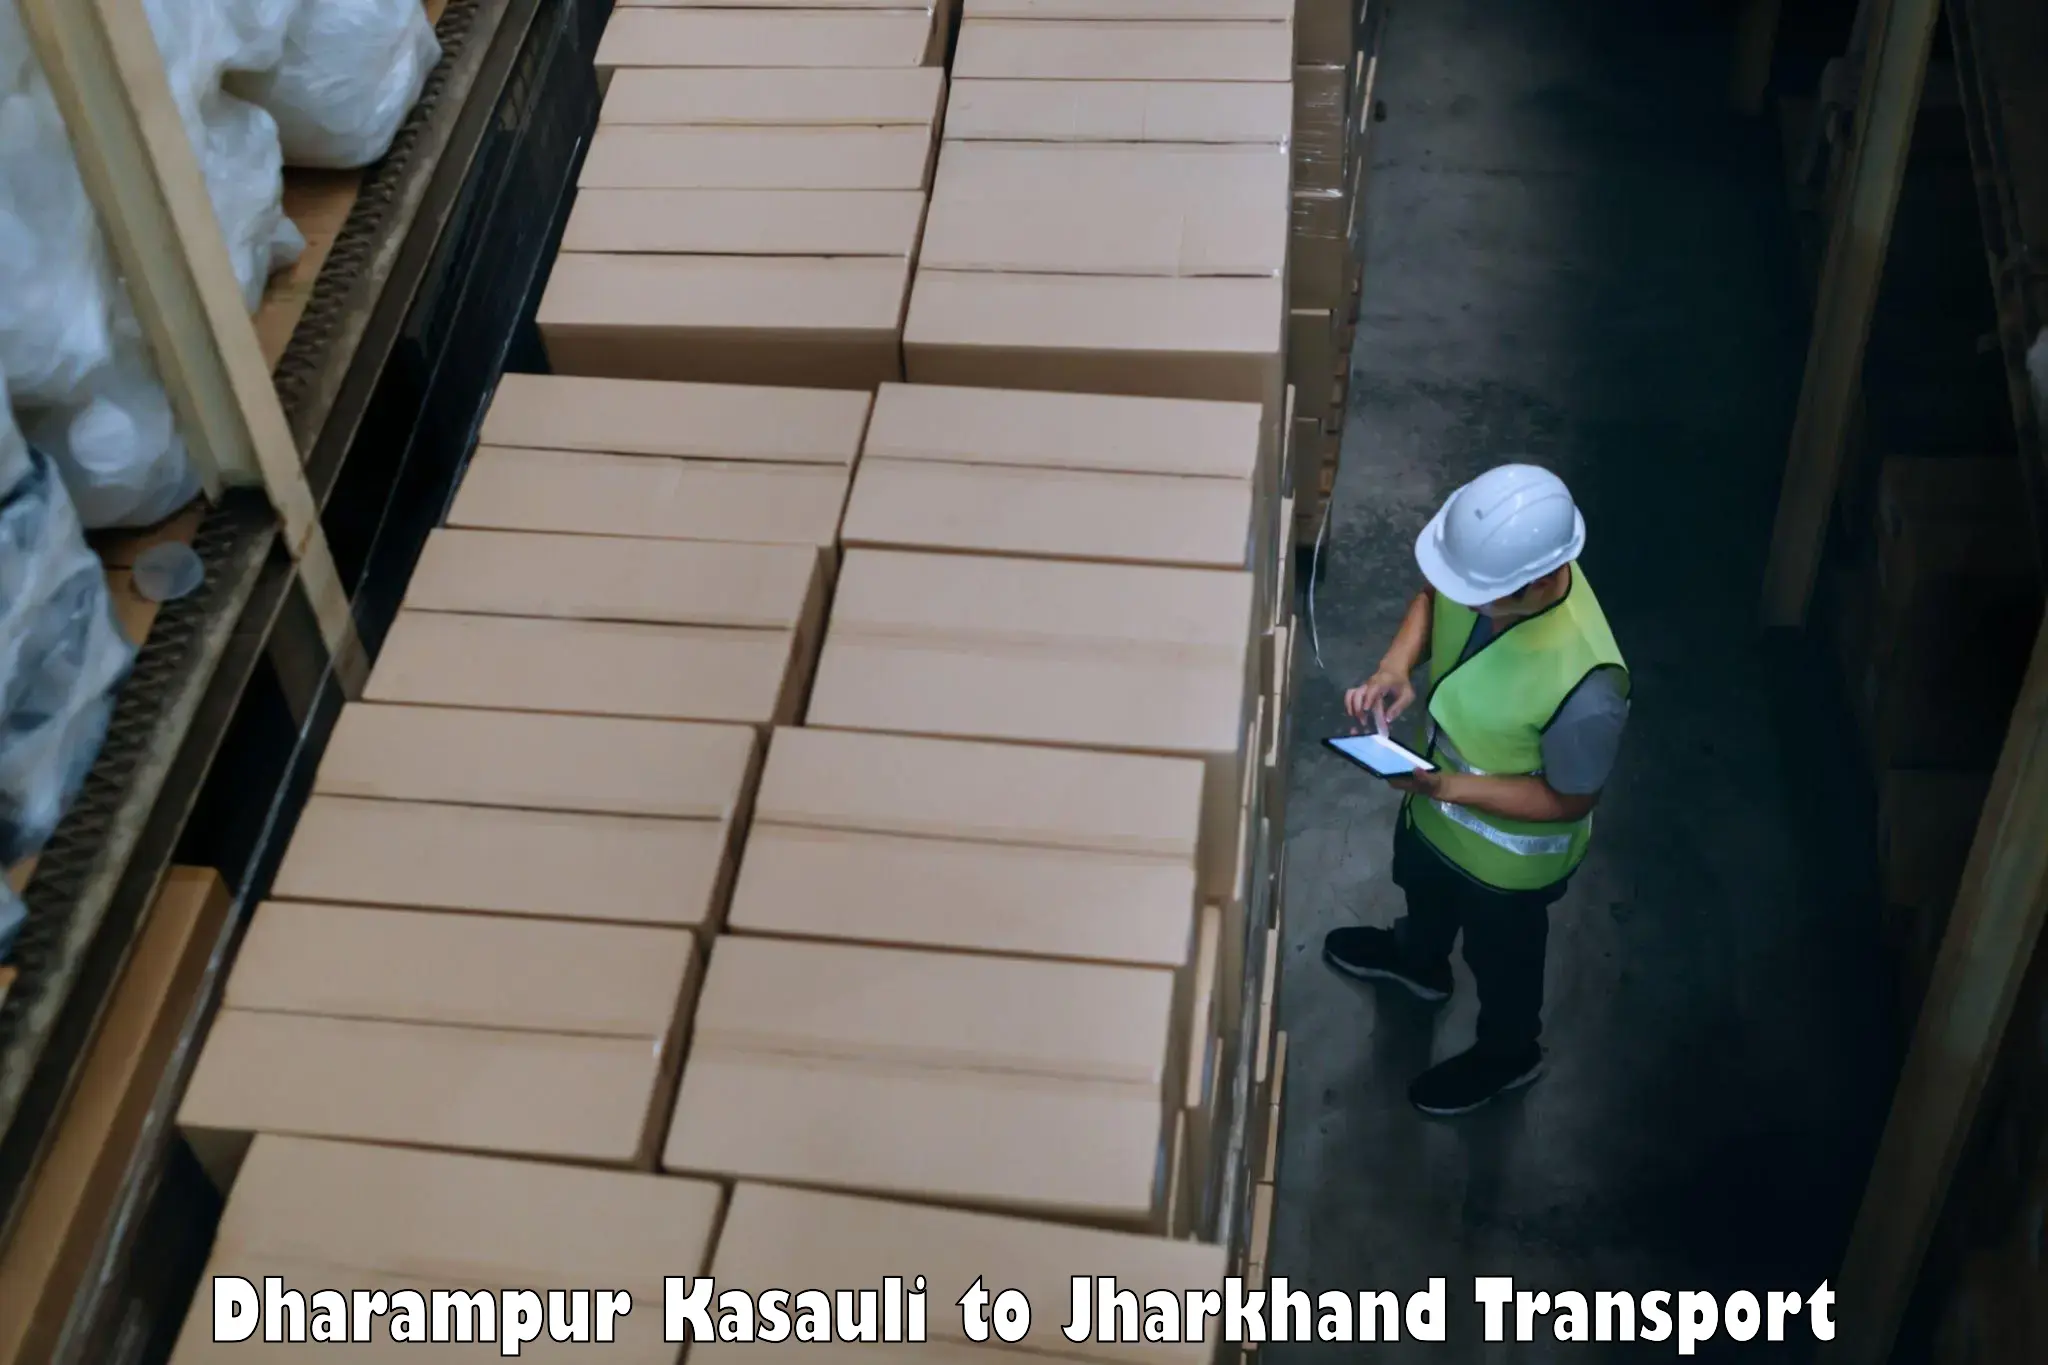 Furniture transport service Dharampur Kasauli to Kedla